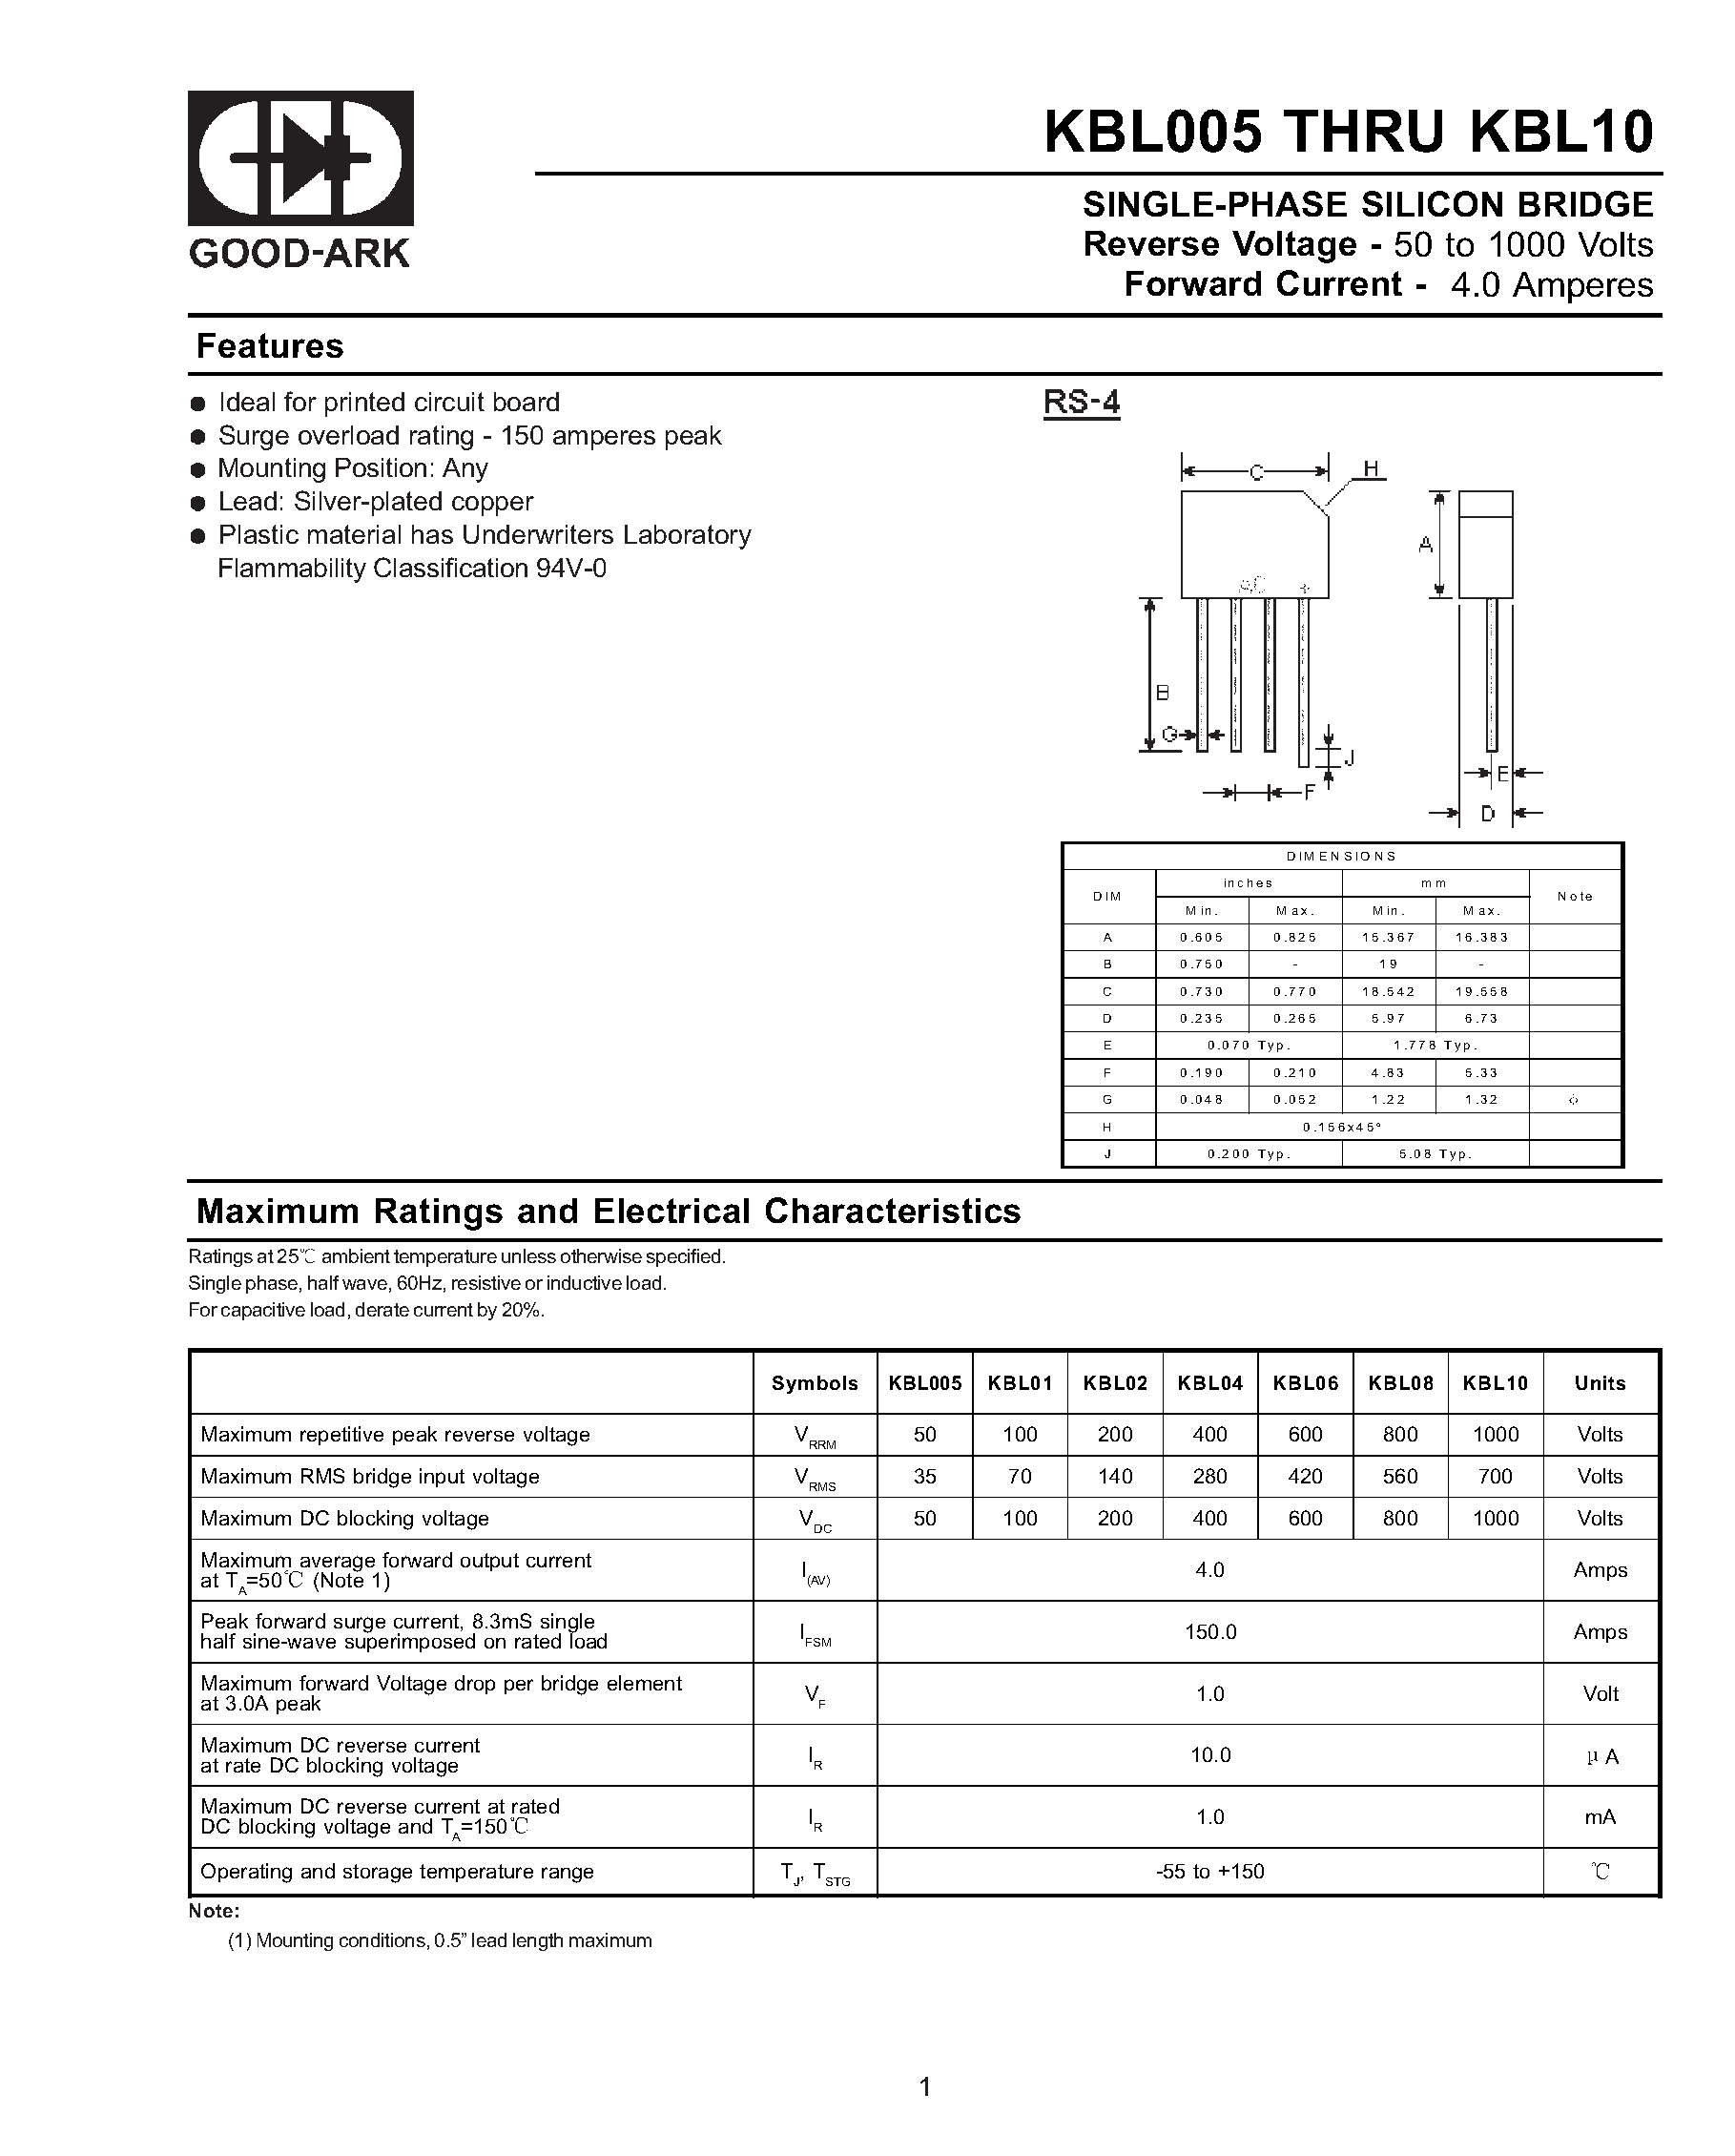 Datasheet KBL005 - SINGLE-PHASE SILICON BRIDGE page 1